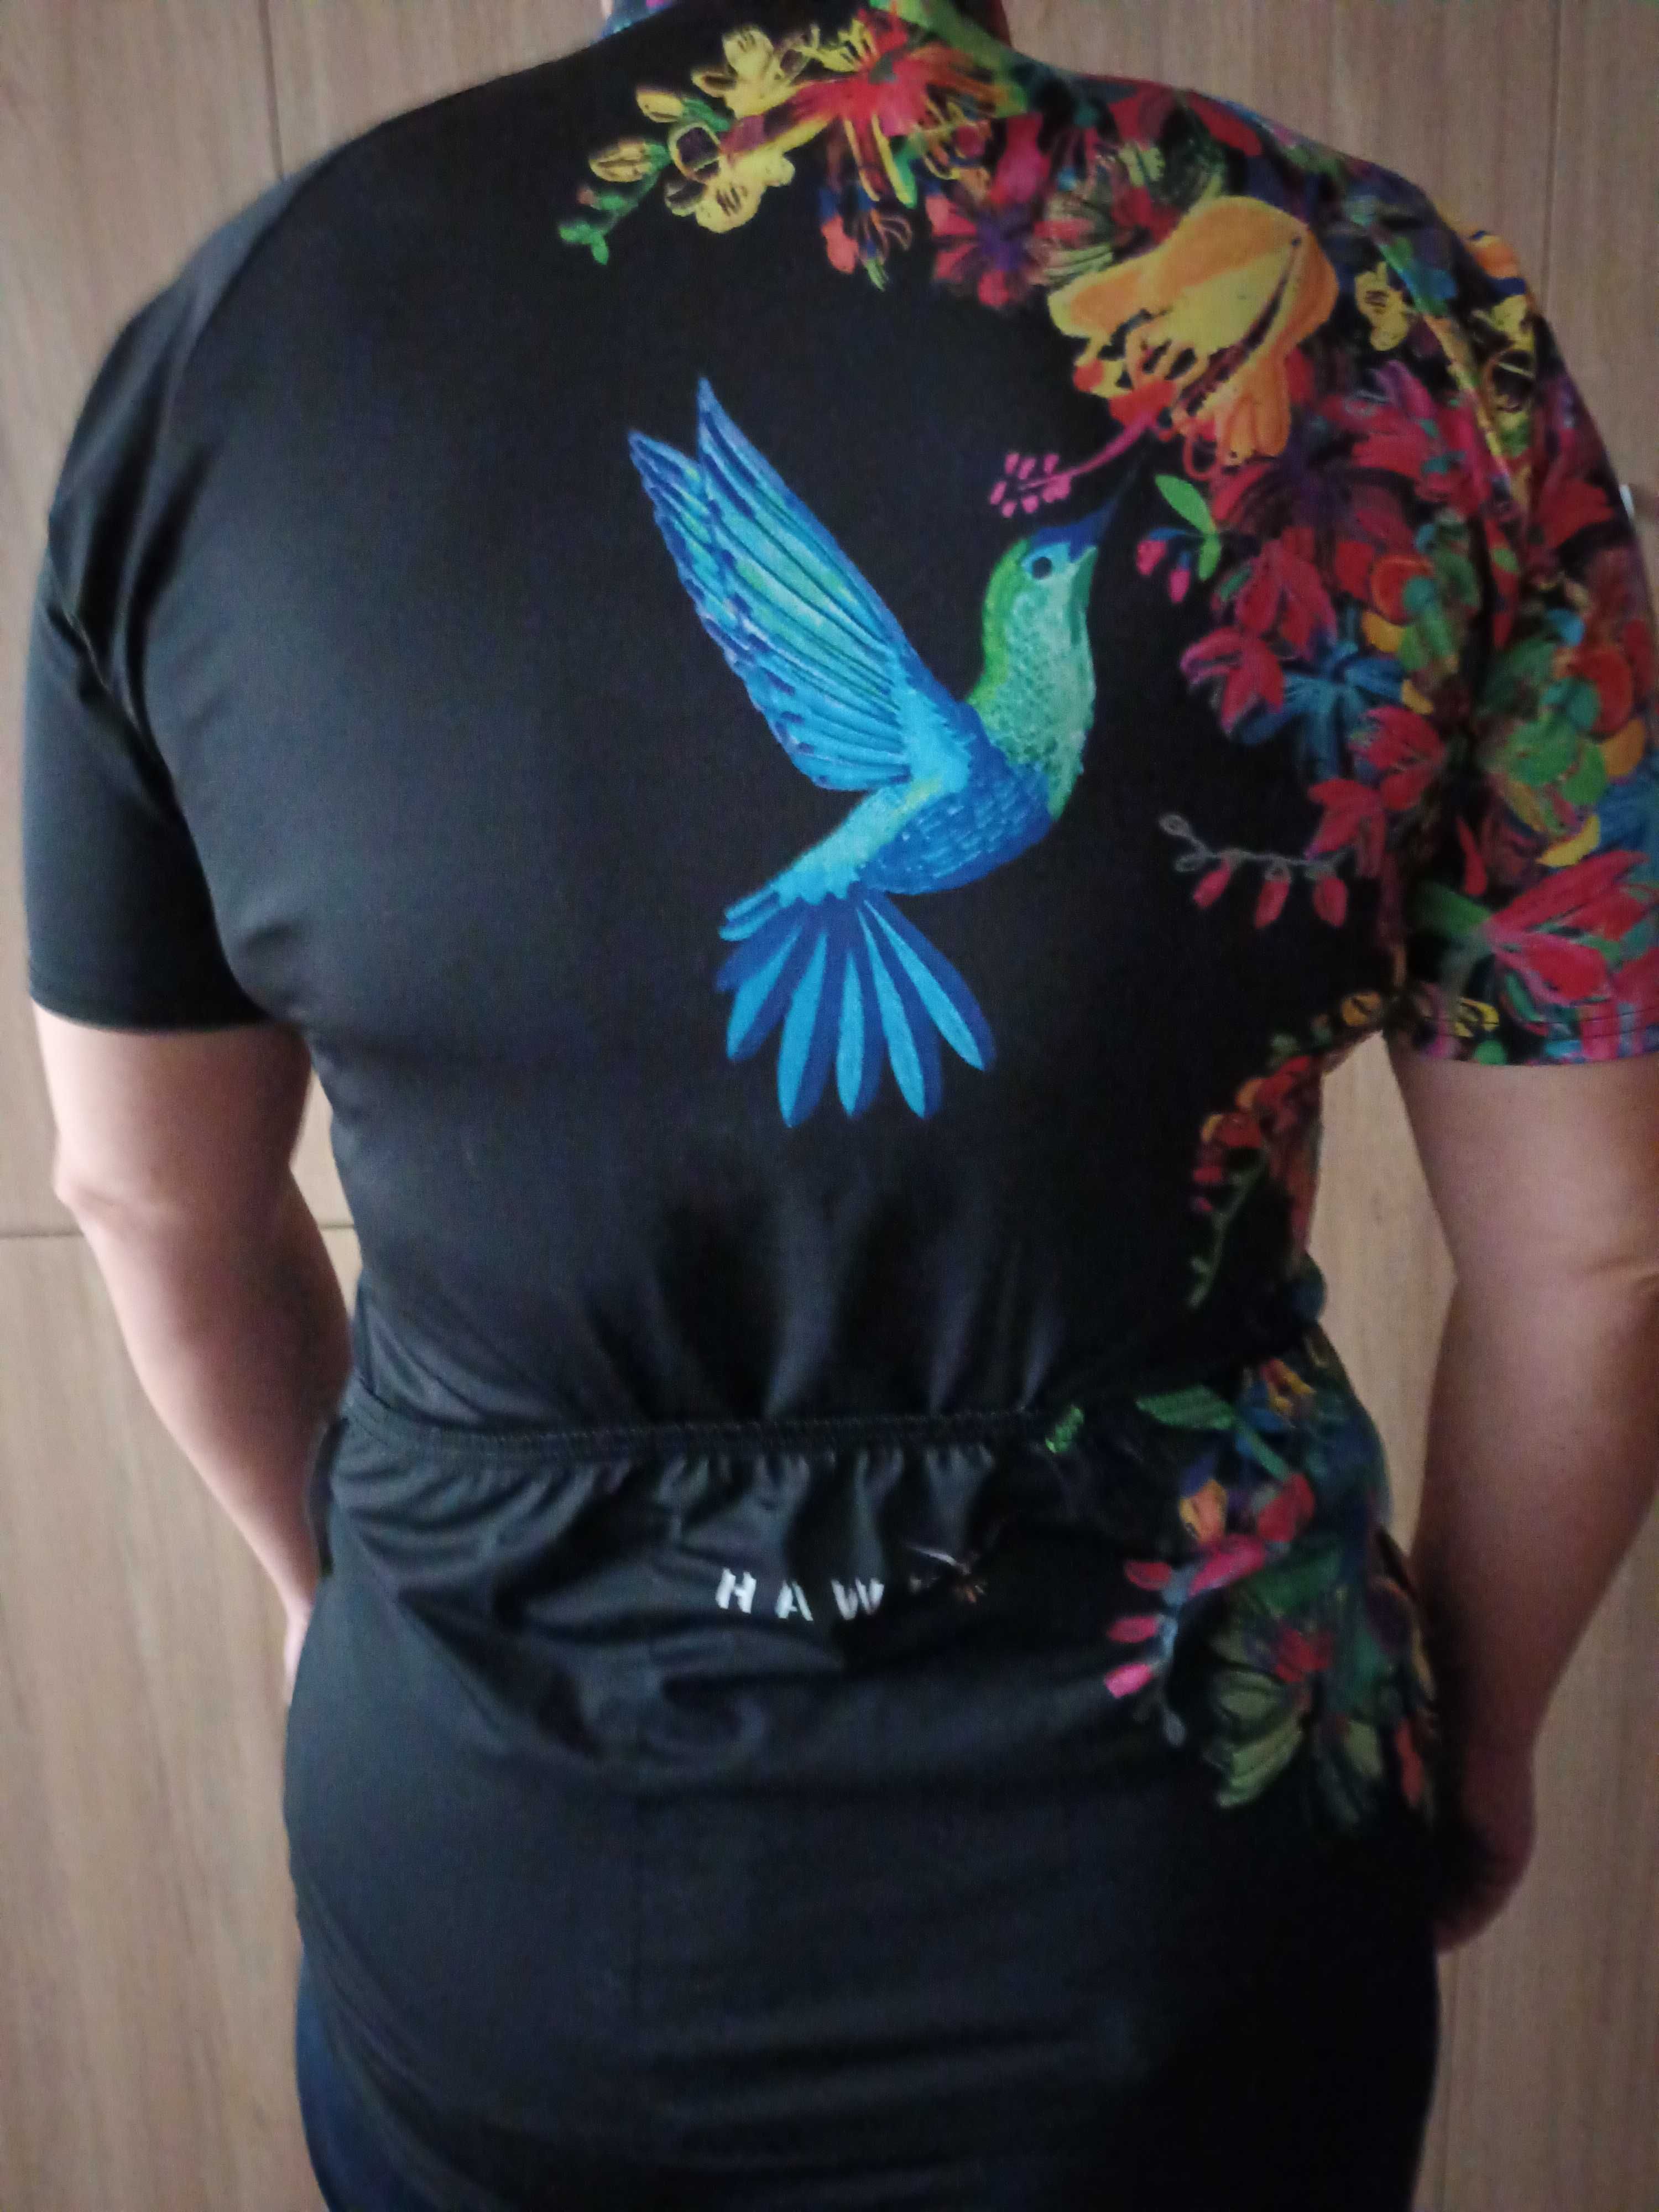 Damska koszulka rowerowa rozm,XL firmy Hawky z kolibrem